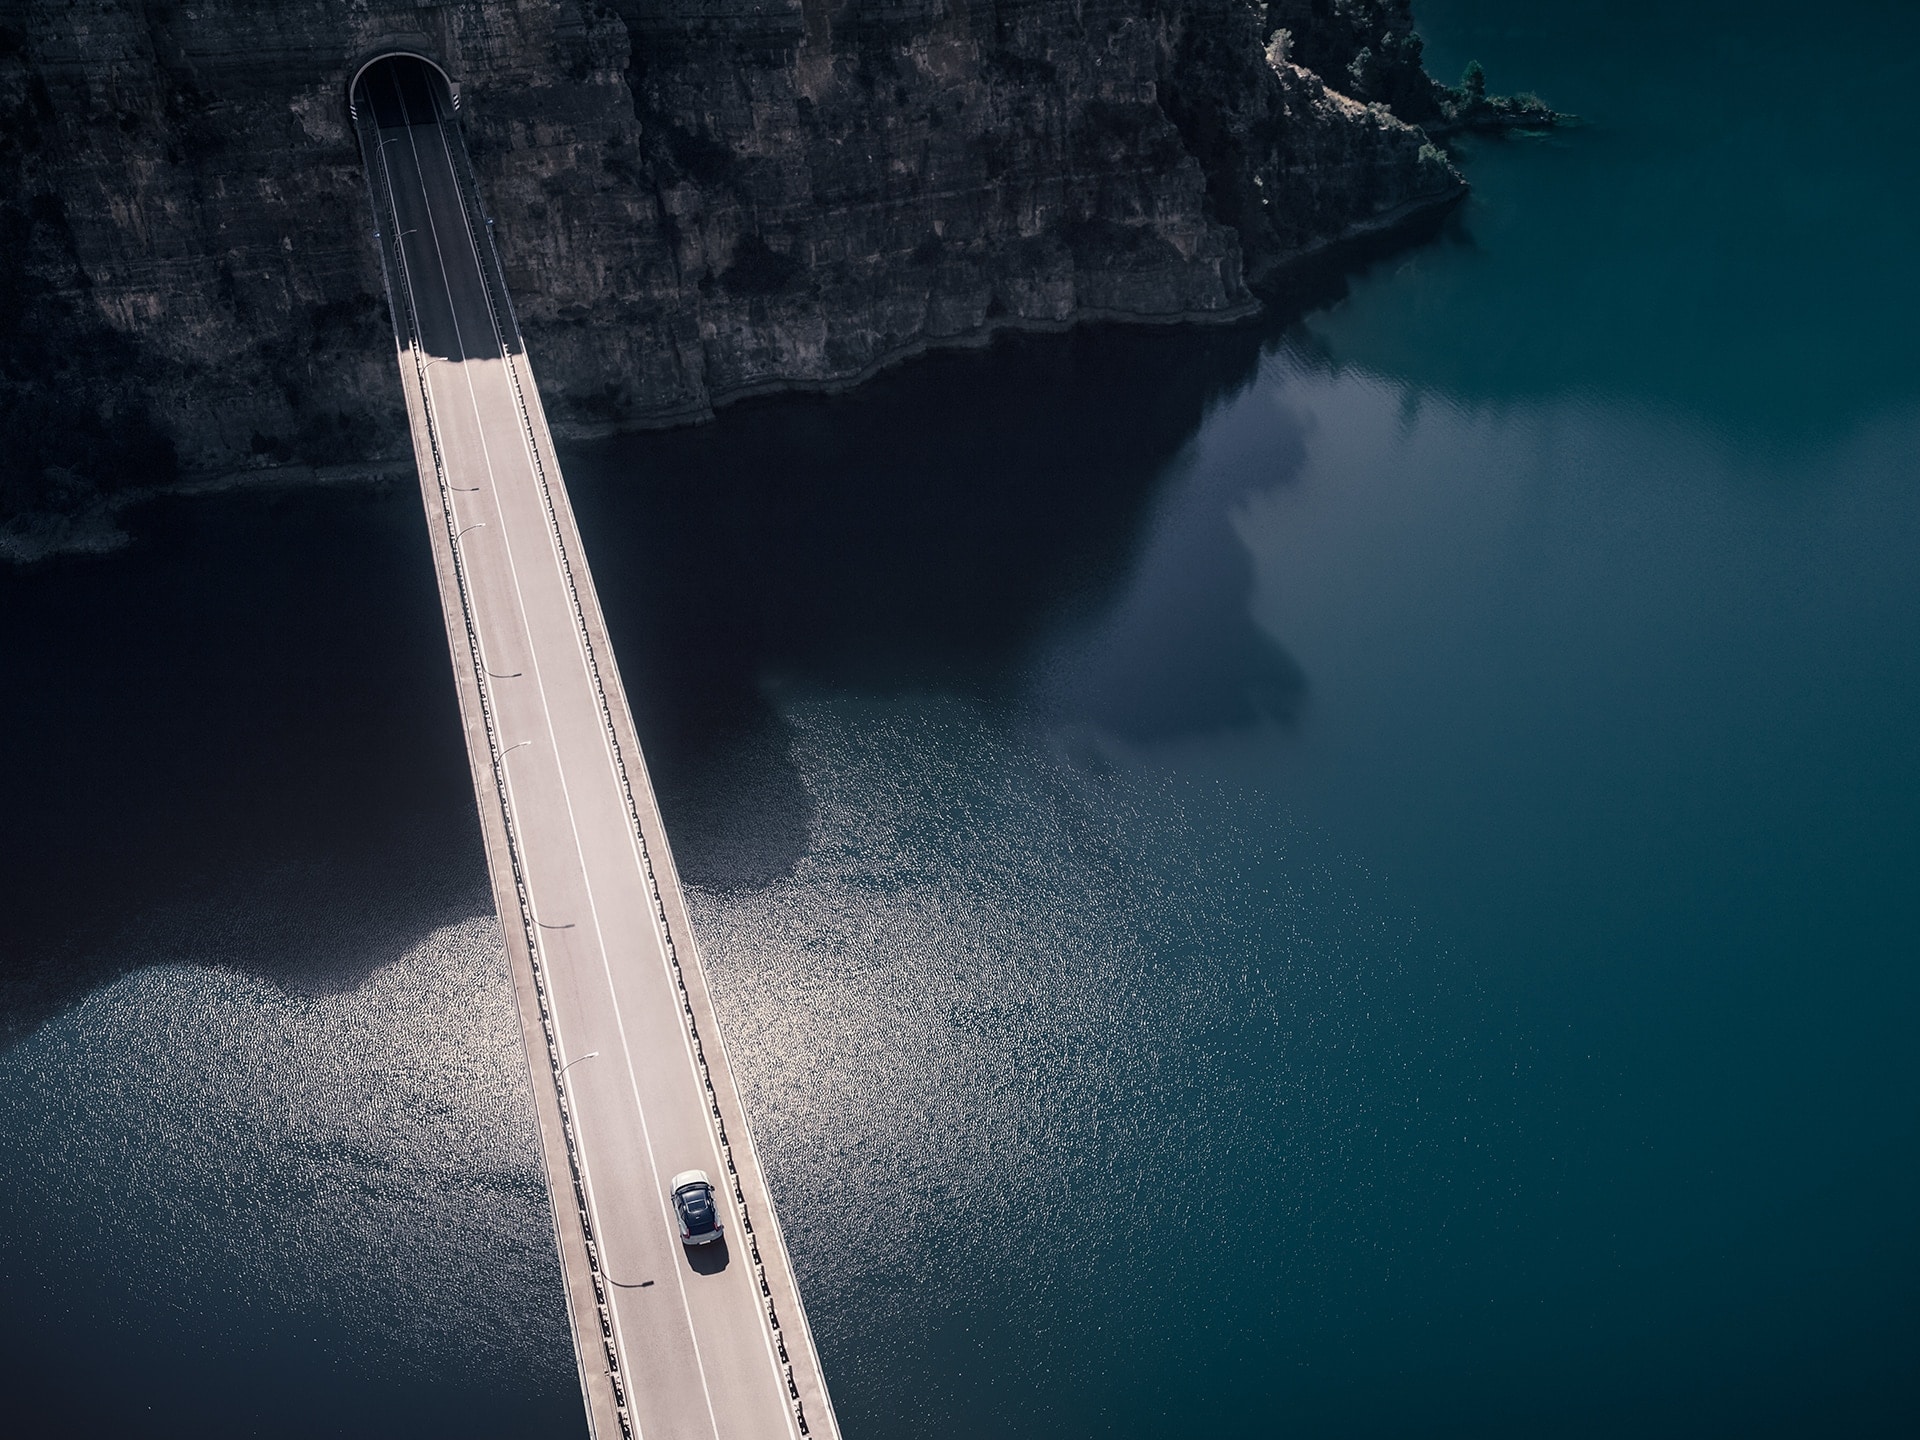 Volvo XC40 Recharge едет по мосту, ведущему в горный туннель.